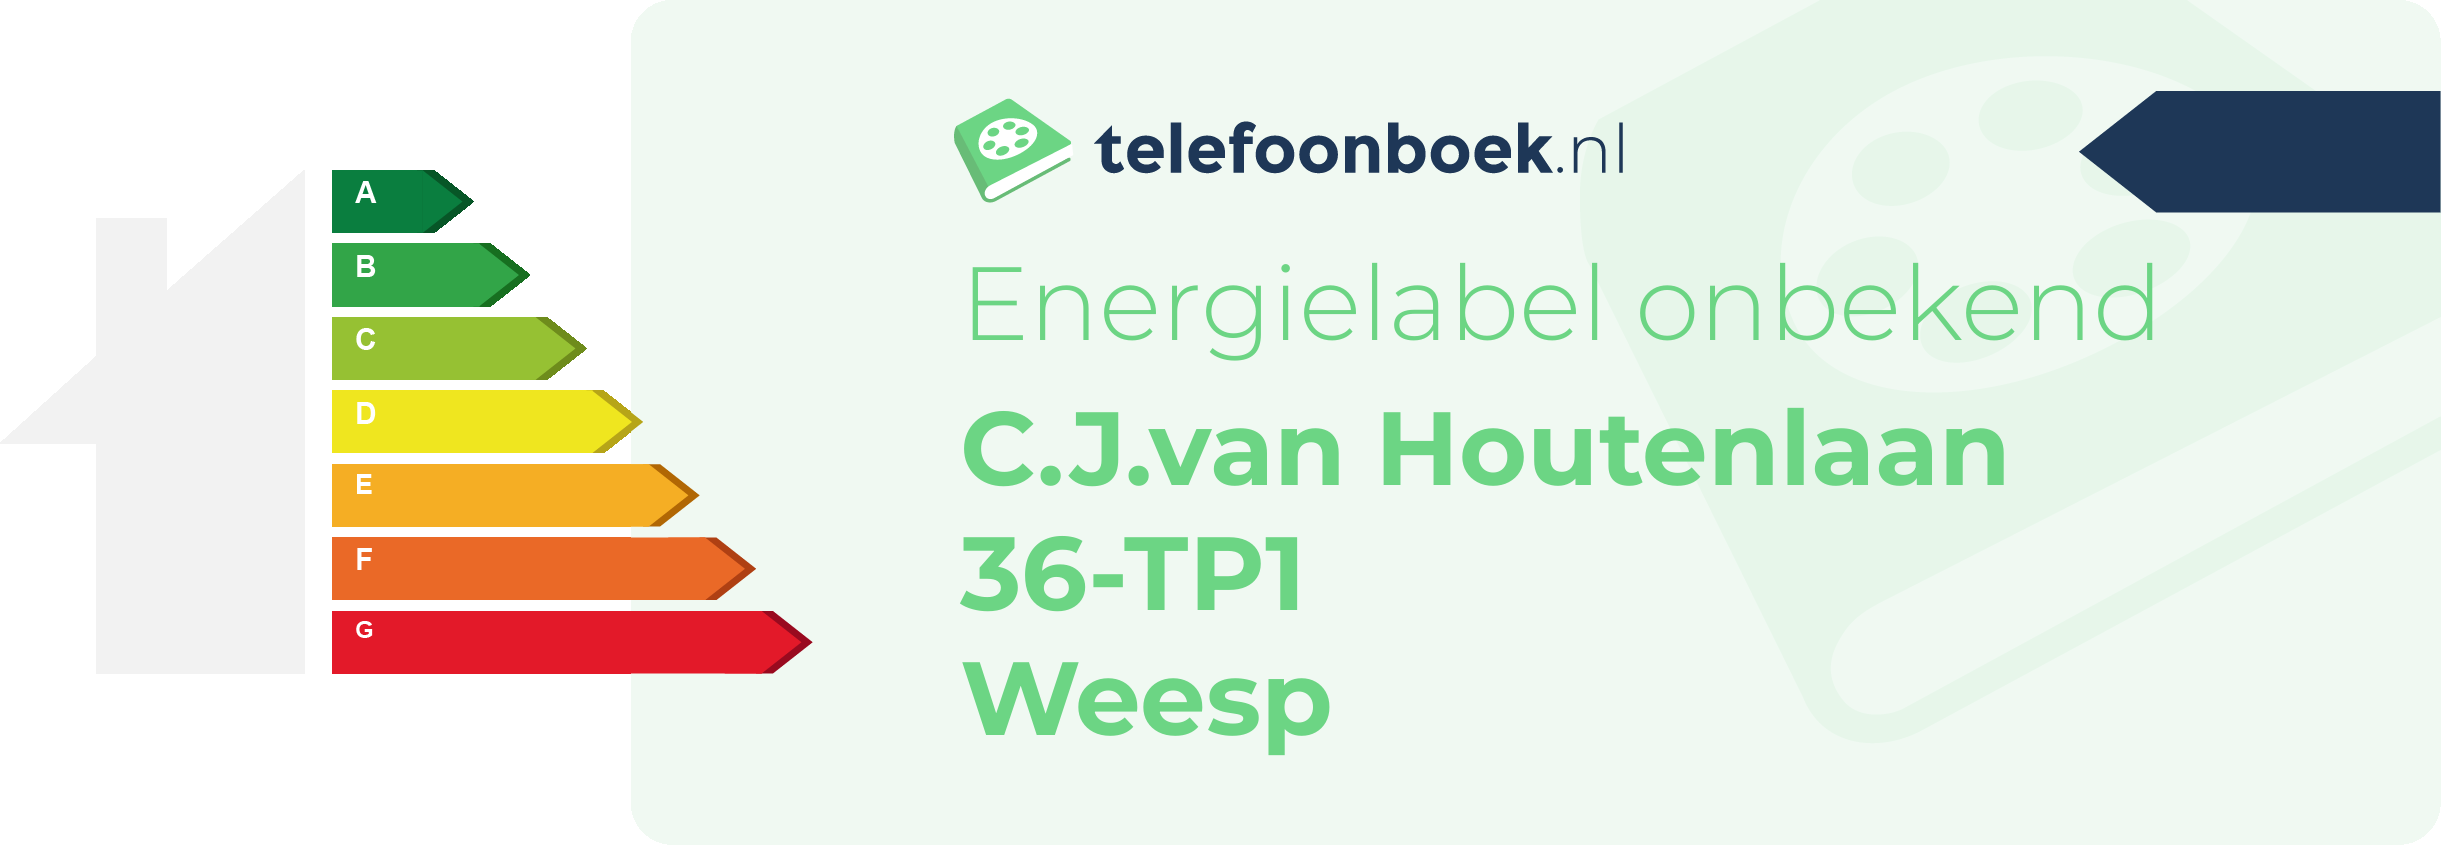 Energielabel C.J.van Houtenlaan 36-TP1 Weesp